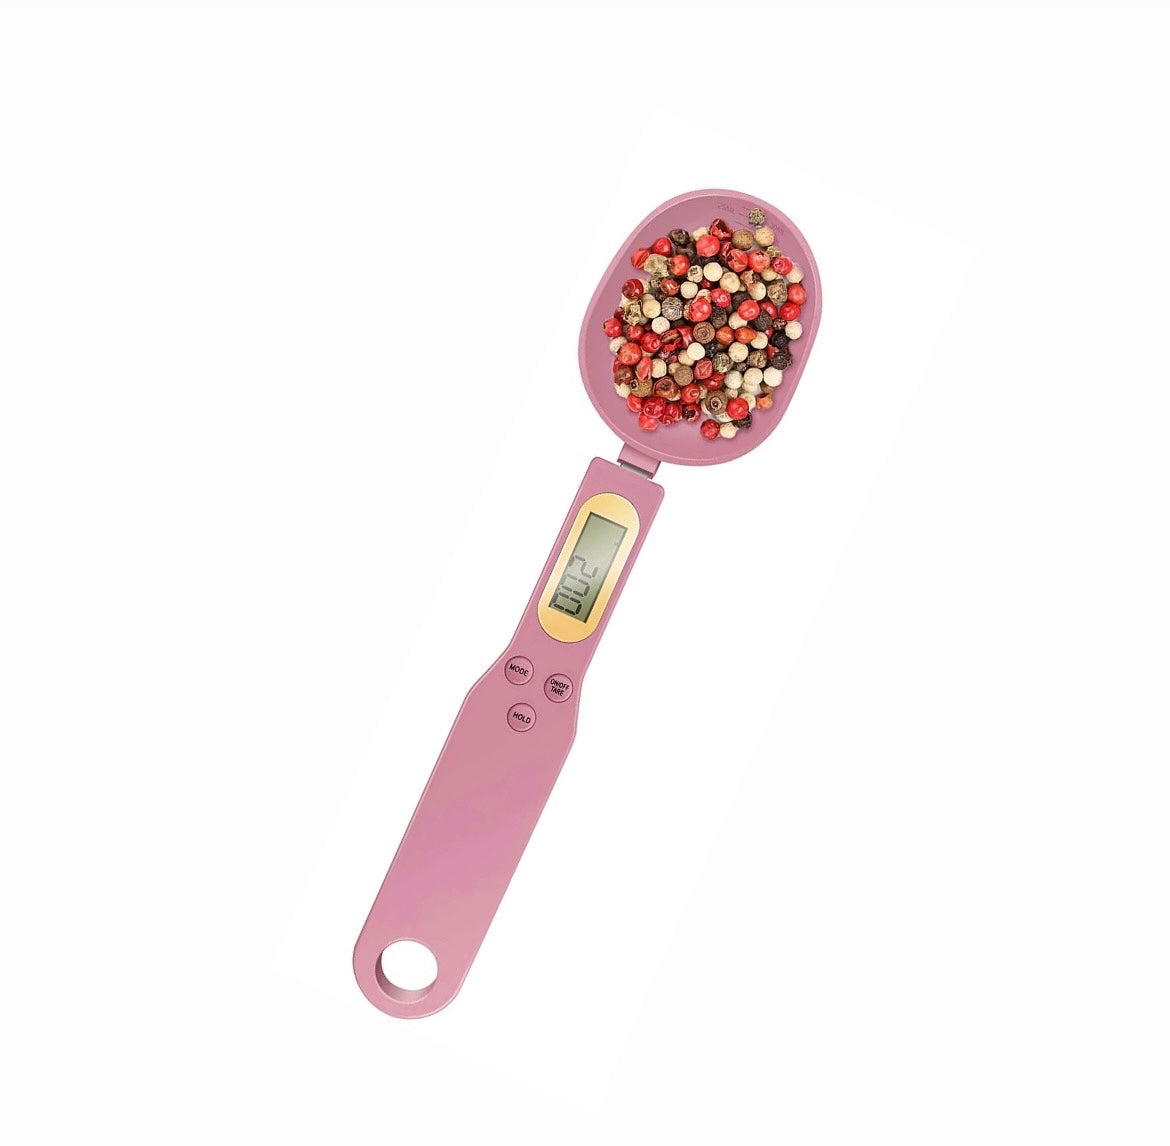 Roze digitale lepel. Voor het meten van je voeding voor afvallen of aankomen. 